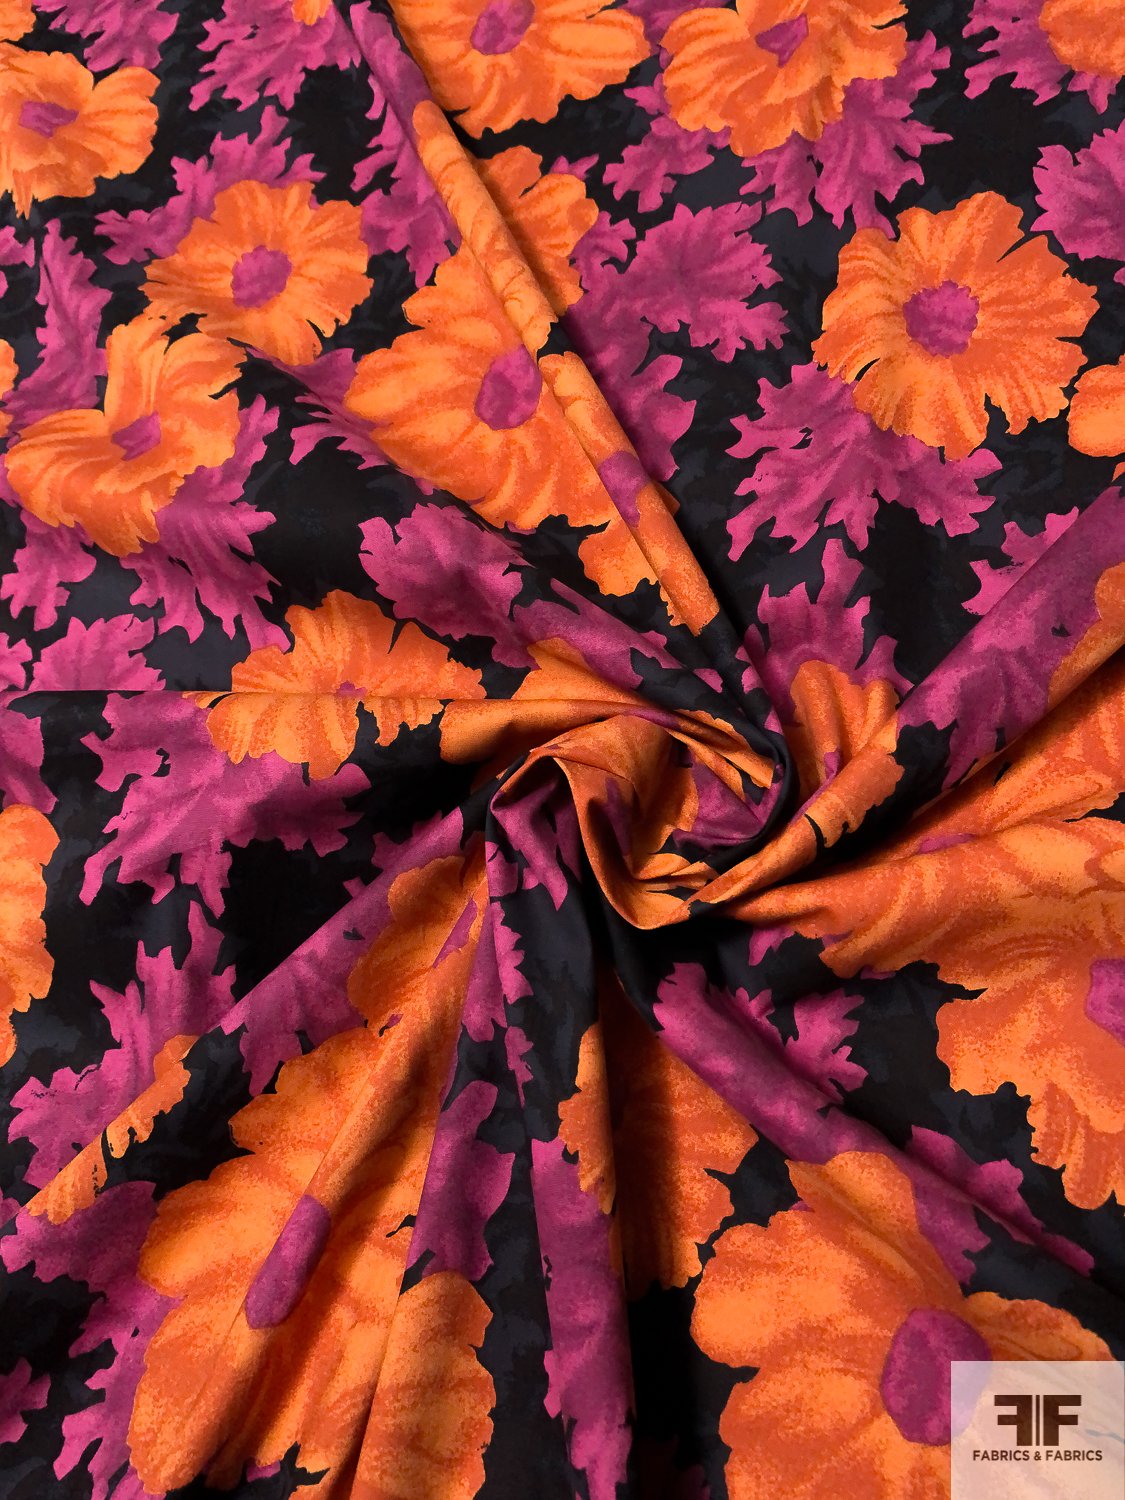 Blossomed Floral Printed Stretch Cotton Poplin - Burnt Orange / Magenta / Black